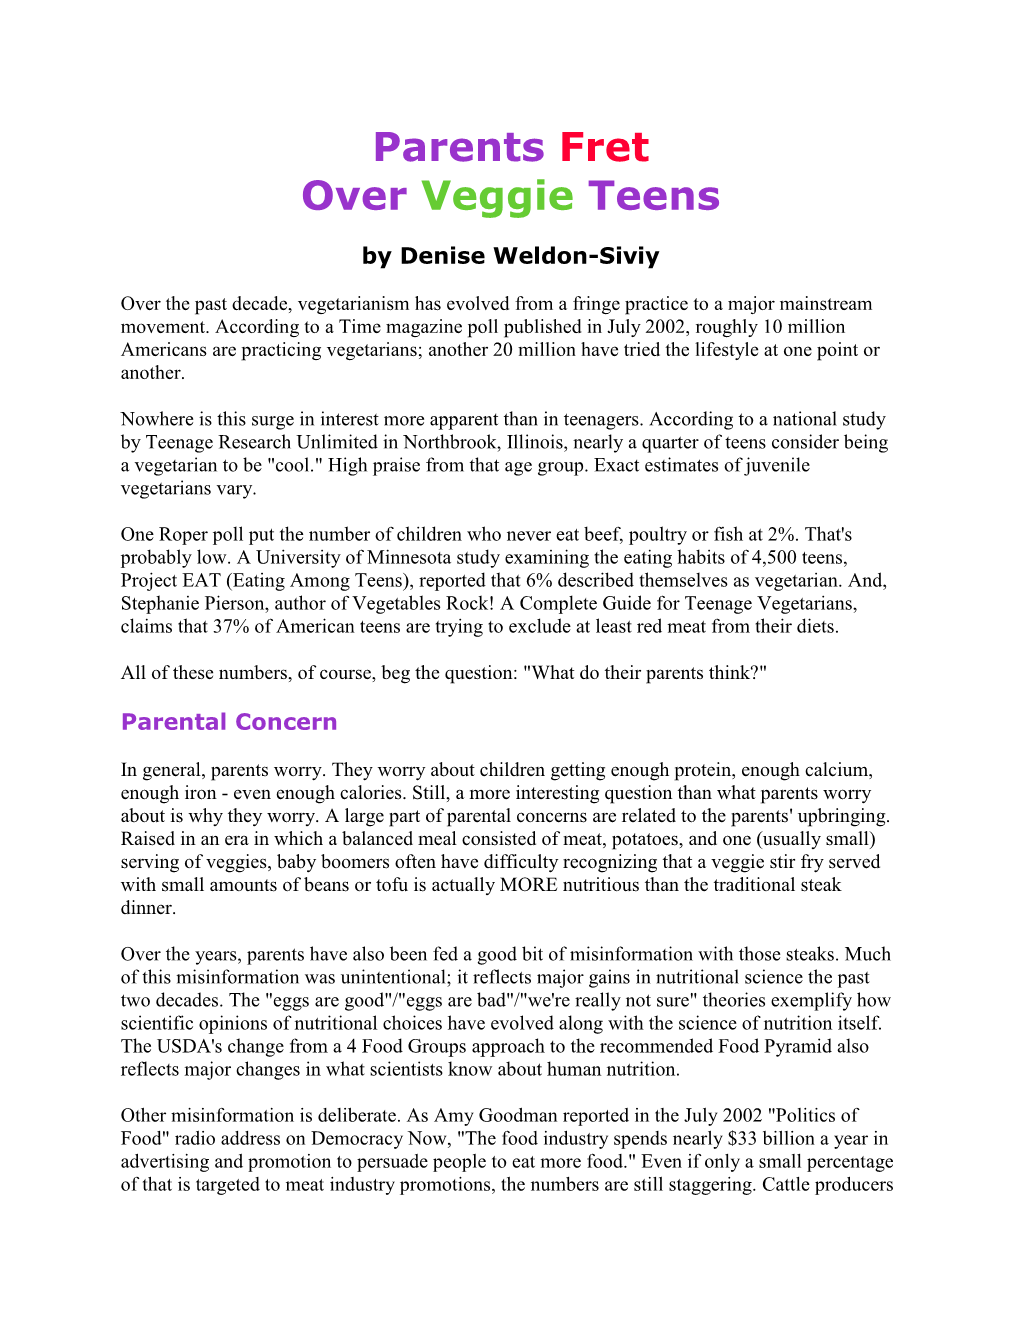 Parents Fret Over Veggie Teens